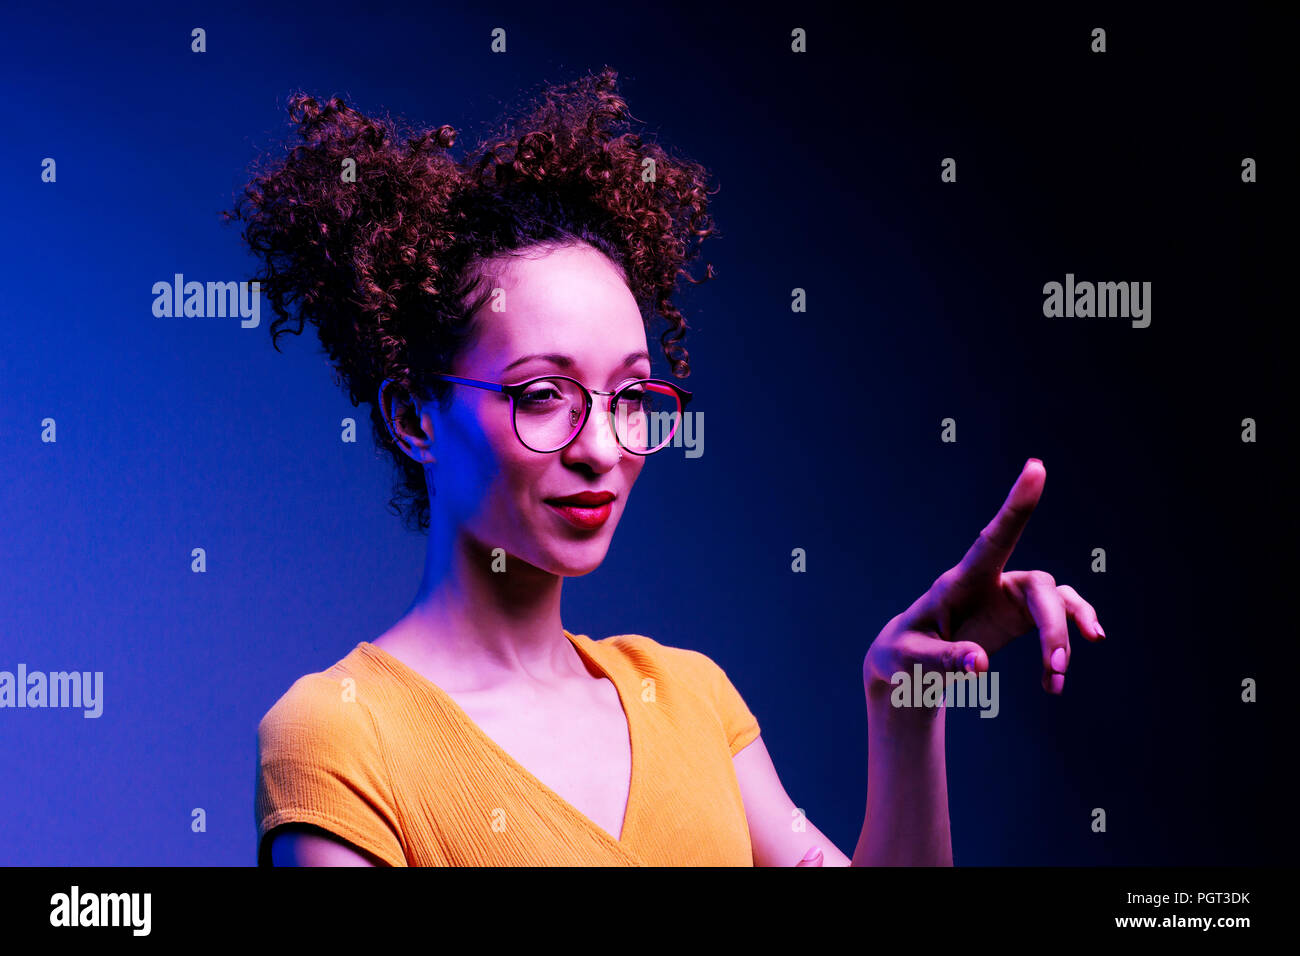 Chica inteligente con gafas y con el dedo levantado sobre pulsar o punto en algo, aislado sobre fondo azul oscuro Foto de stock